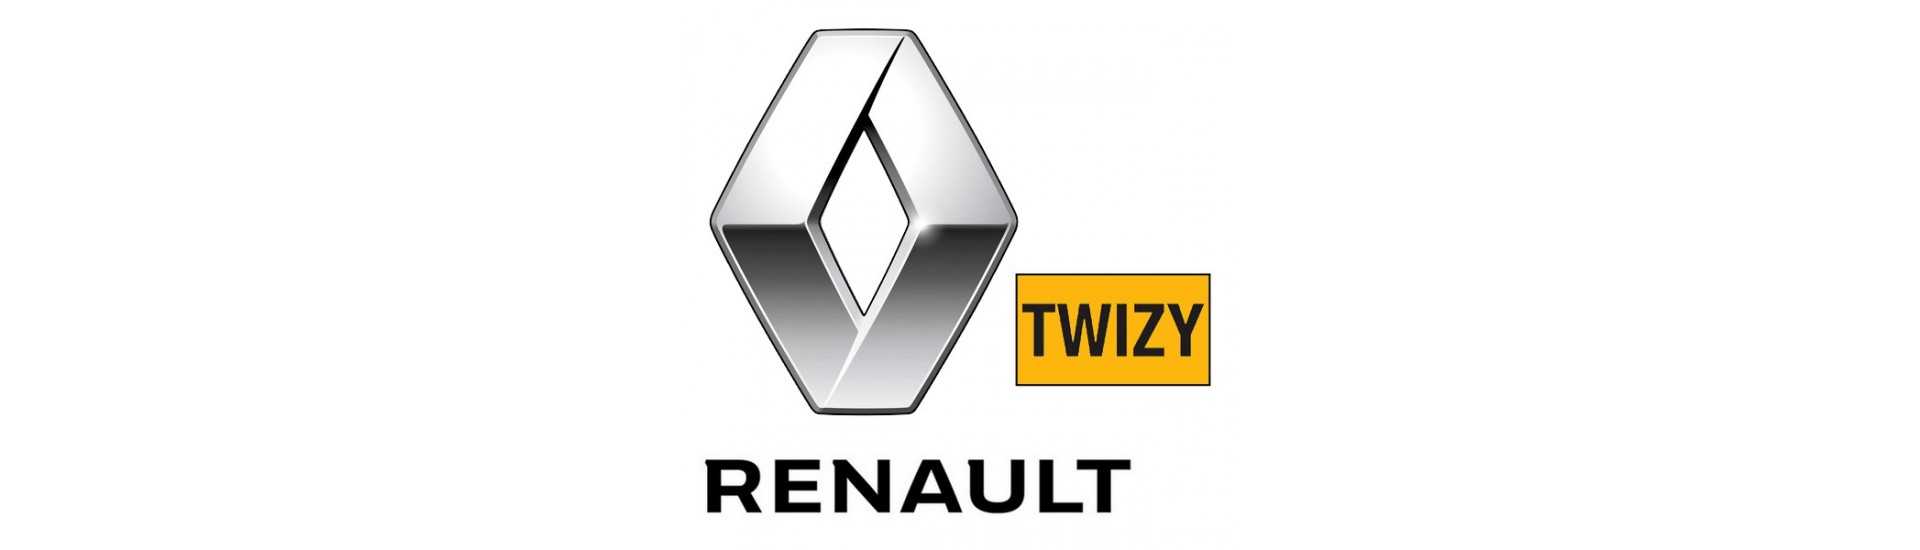 Moottoripyöräilijä parhaalla hinnalla ilman lupaa Renault Twizy